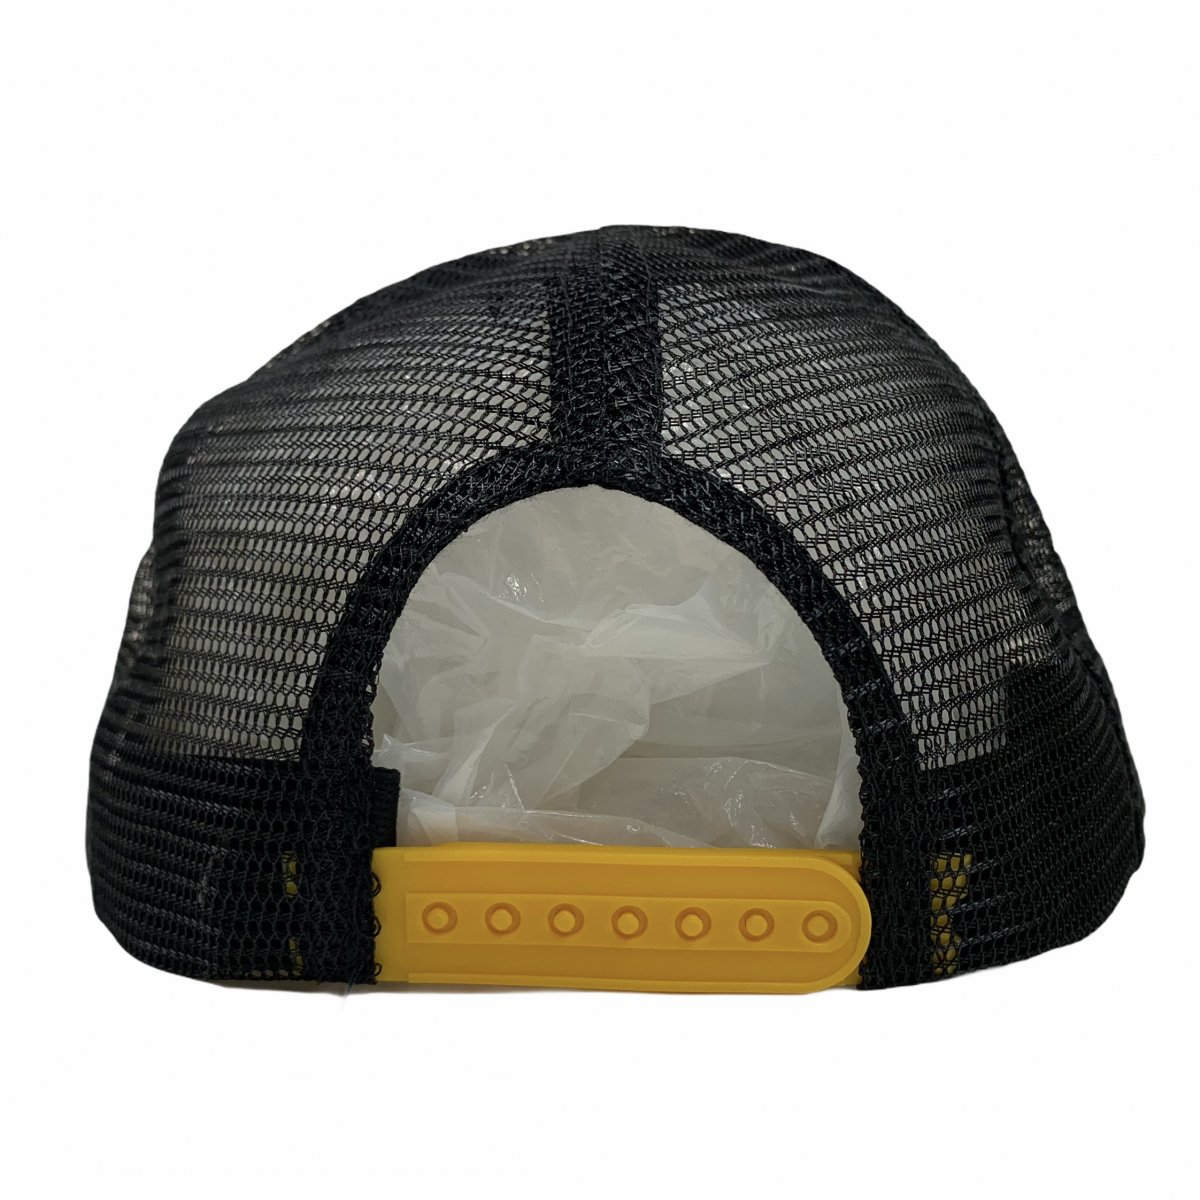 新品 INDEPENDENT O.G.B.C Trucker Mesh Hat (GOLD/BLACK) インディ 